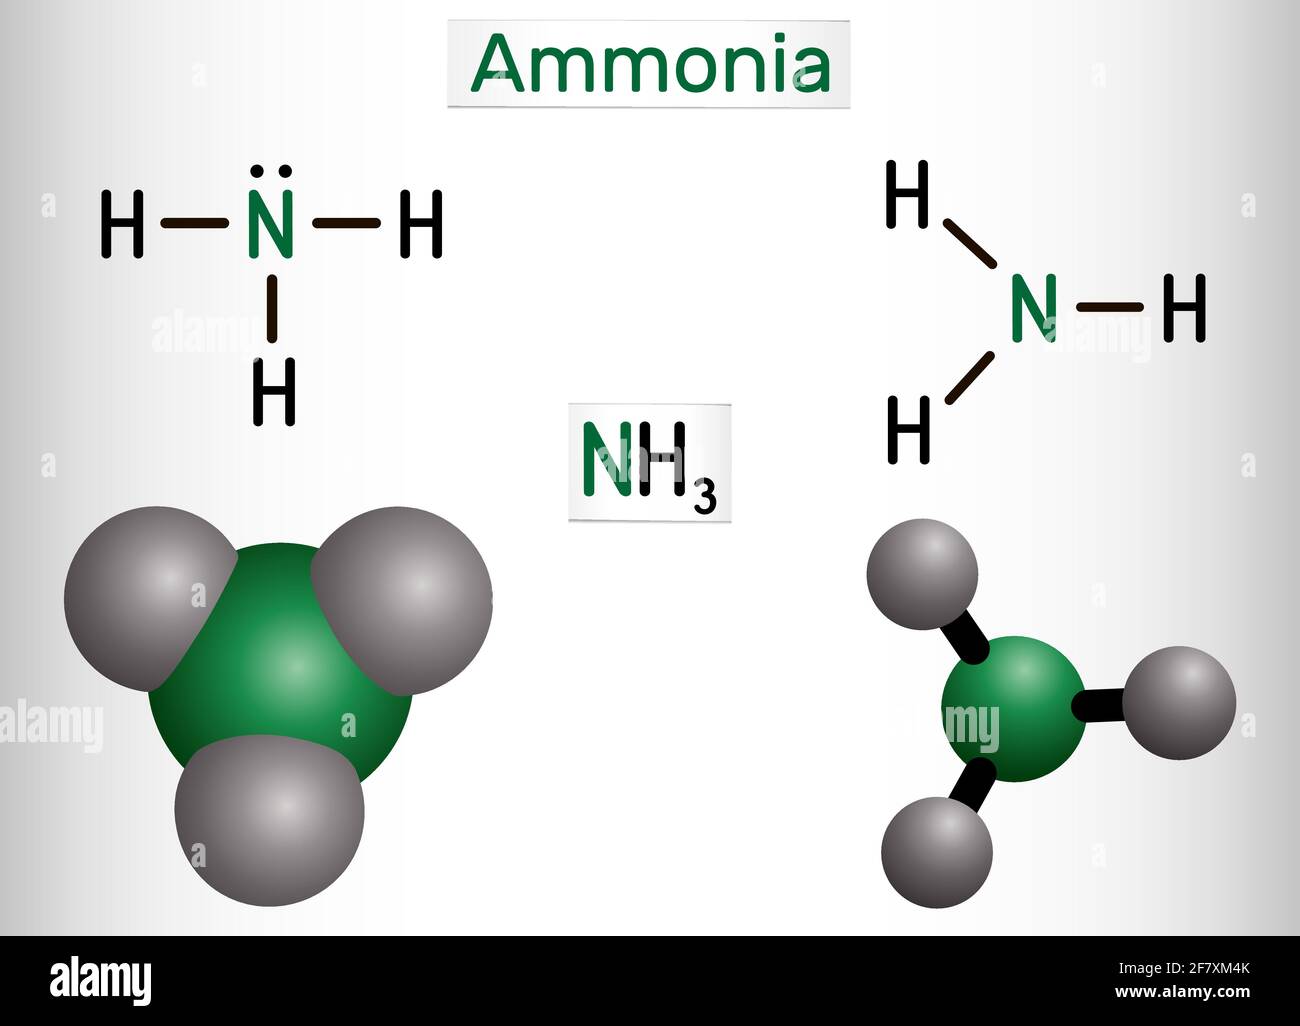 Ammoniaca, molecola NH3. Si tratta di idruro pnictogeno, composto  inorganico composto da un singolo atomo di azoto legato covalentemente a  tre atomi di idrogeno. Structu Immagine e Vettoriale - Alamy